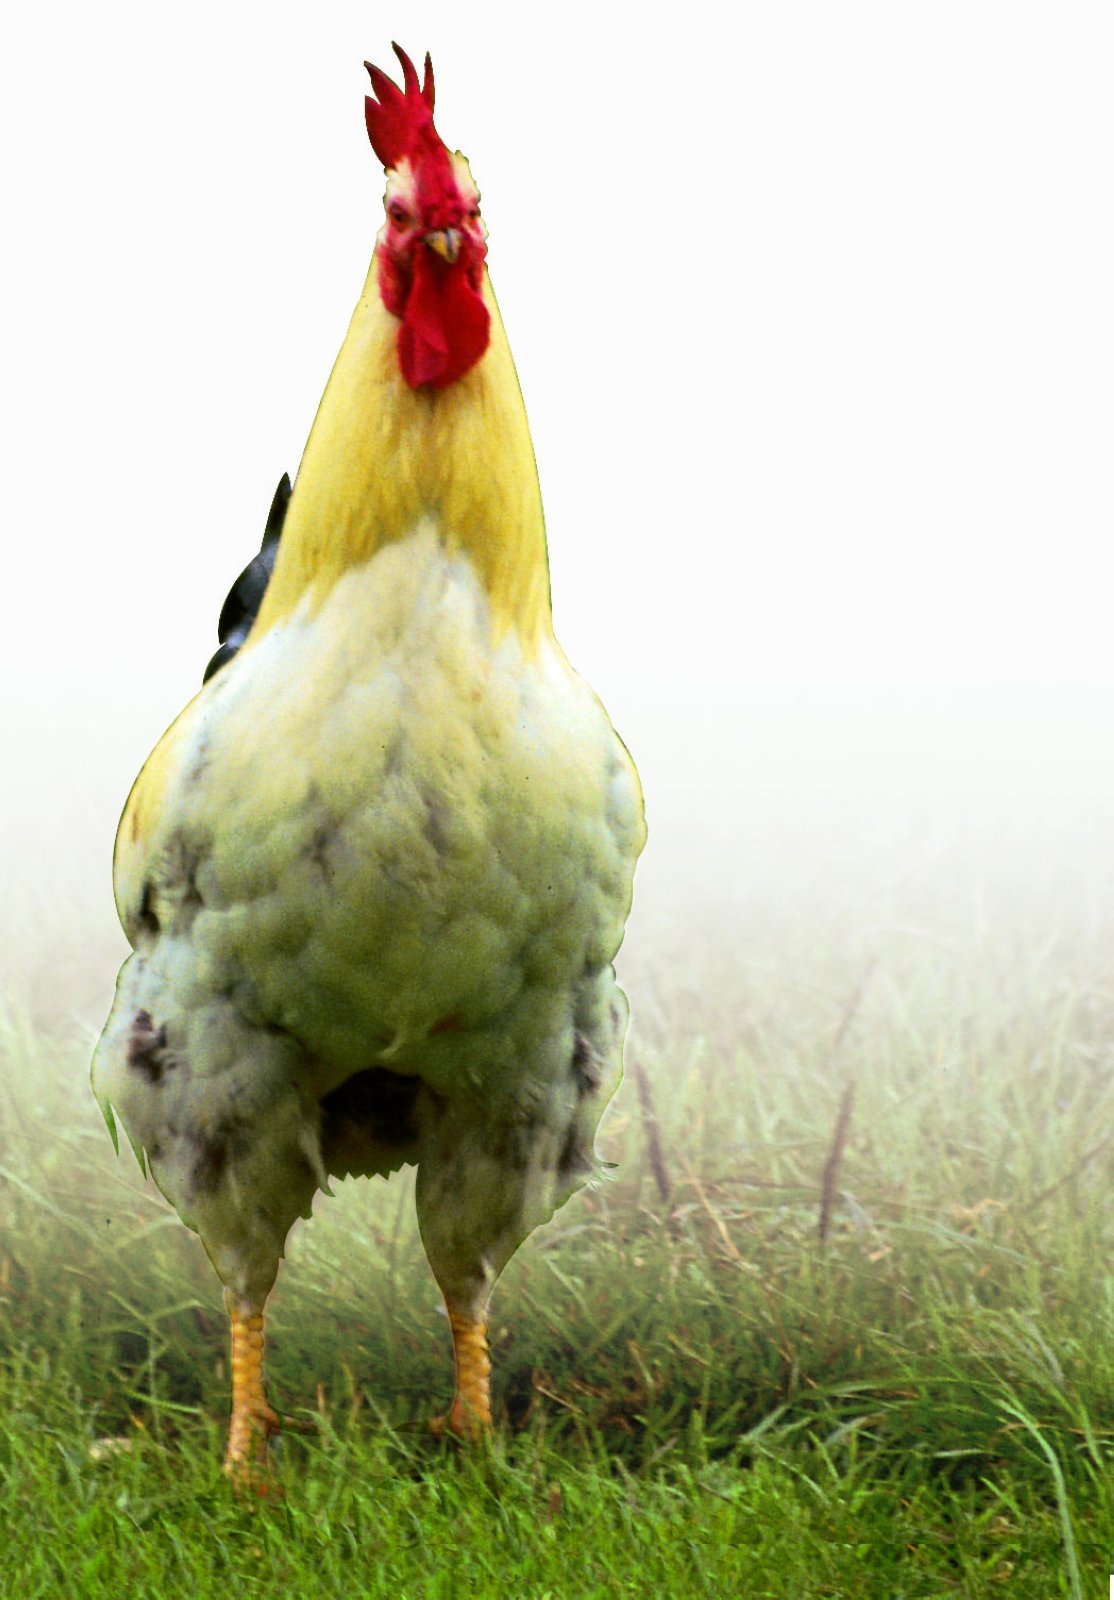 鸡战斗的鸡 库存图片. 图片 包括有 动物区系, 母鸡, 烧杯, 农场, 宠物, 斗鸡, 家禽, 雄鸡, 家畜 - 60786343